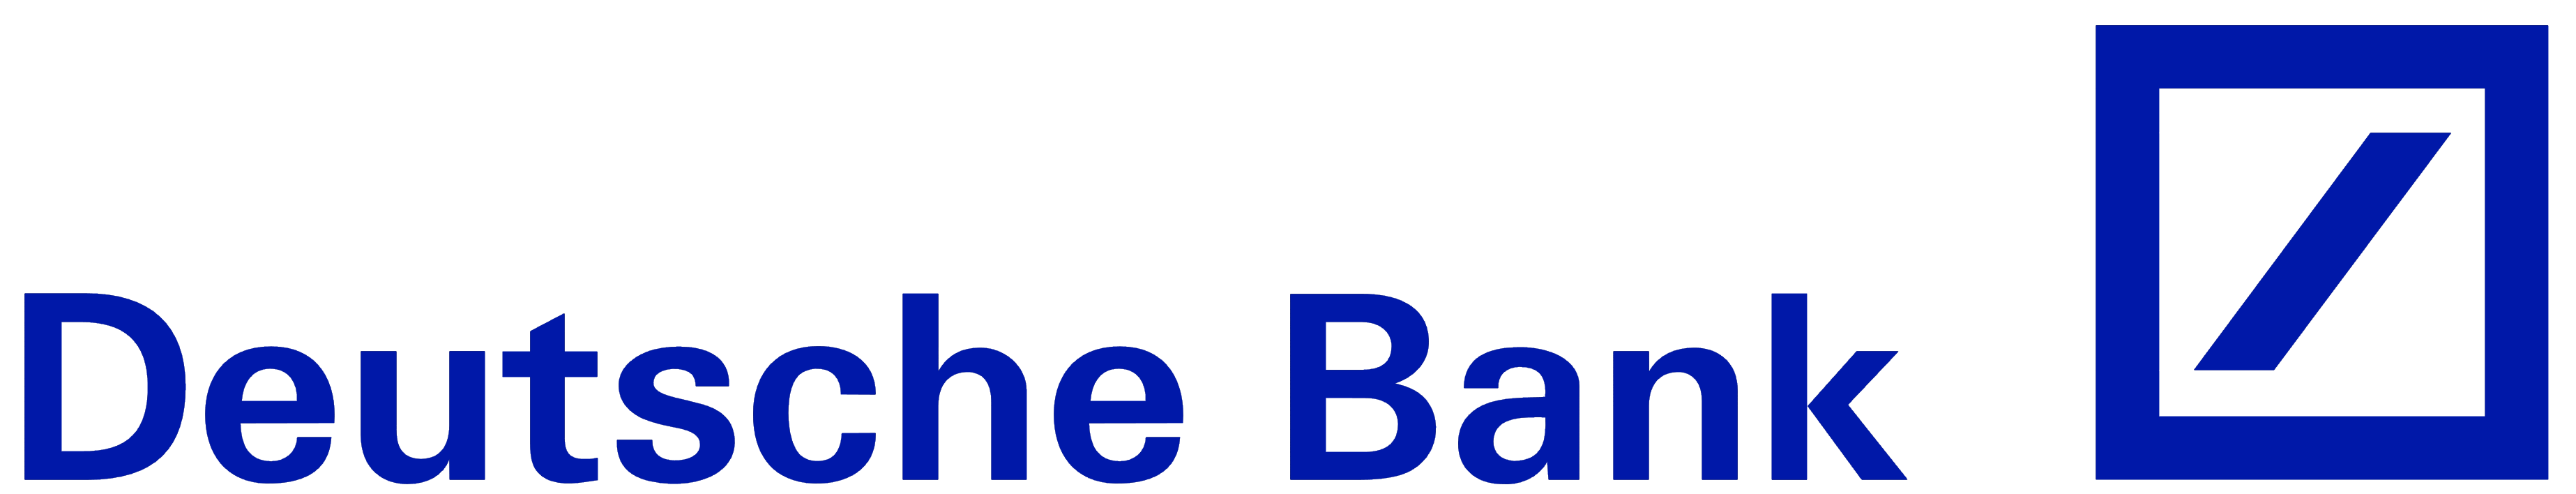 Deutsche_Bank_logo - CPI